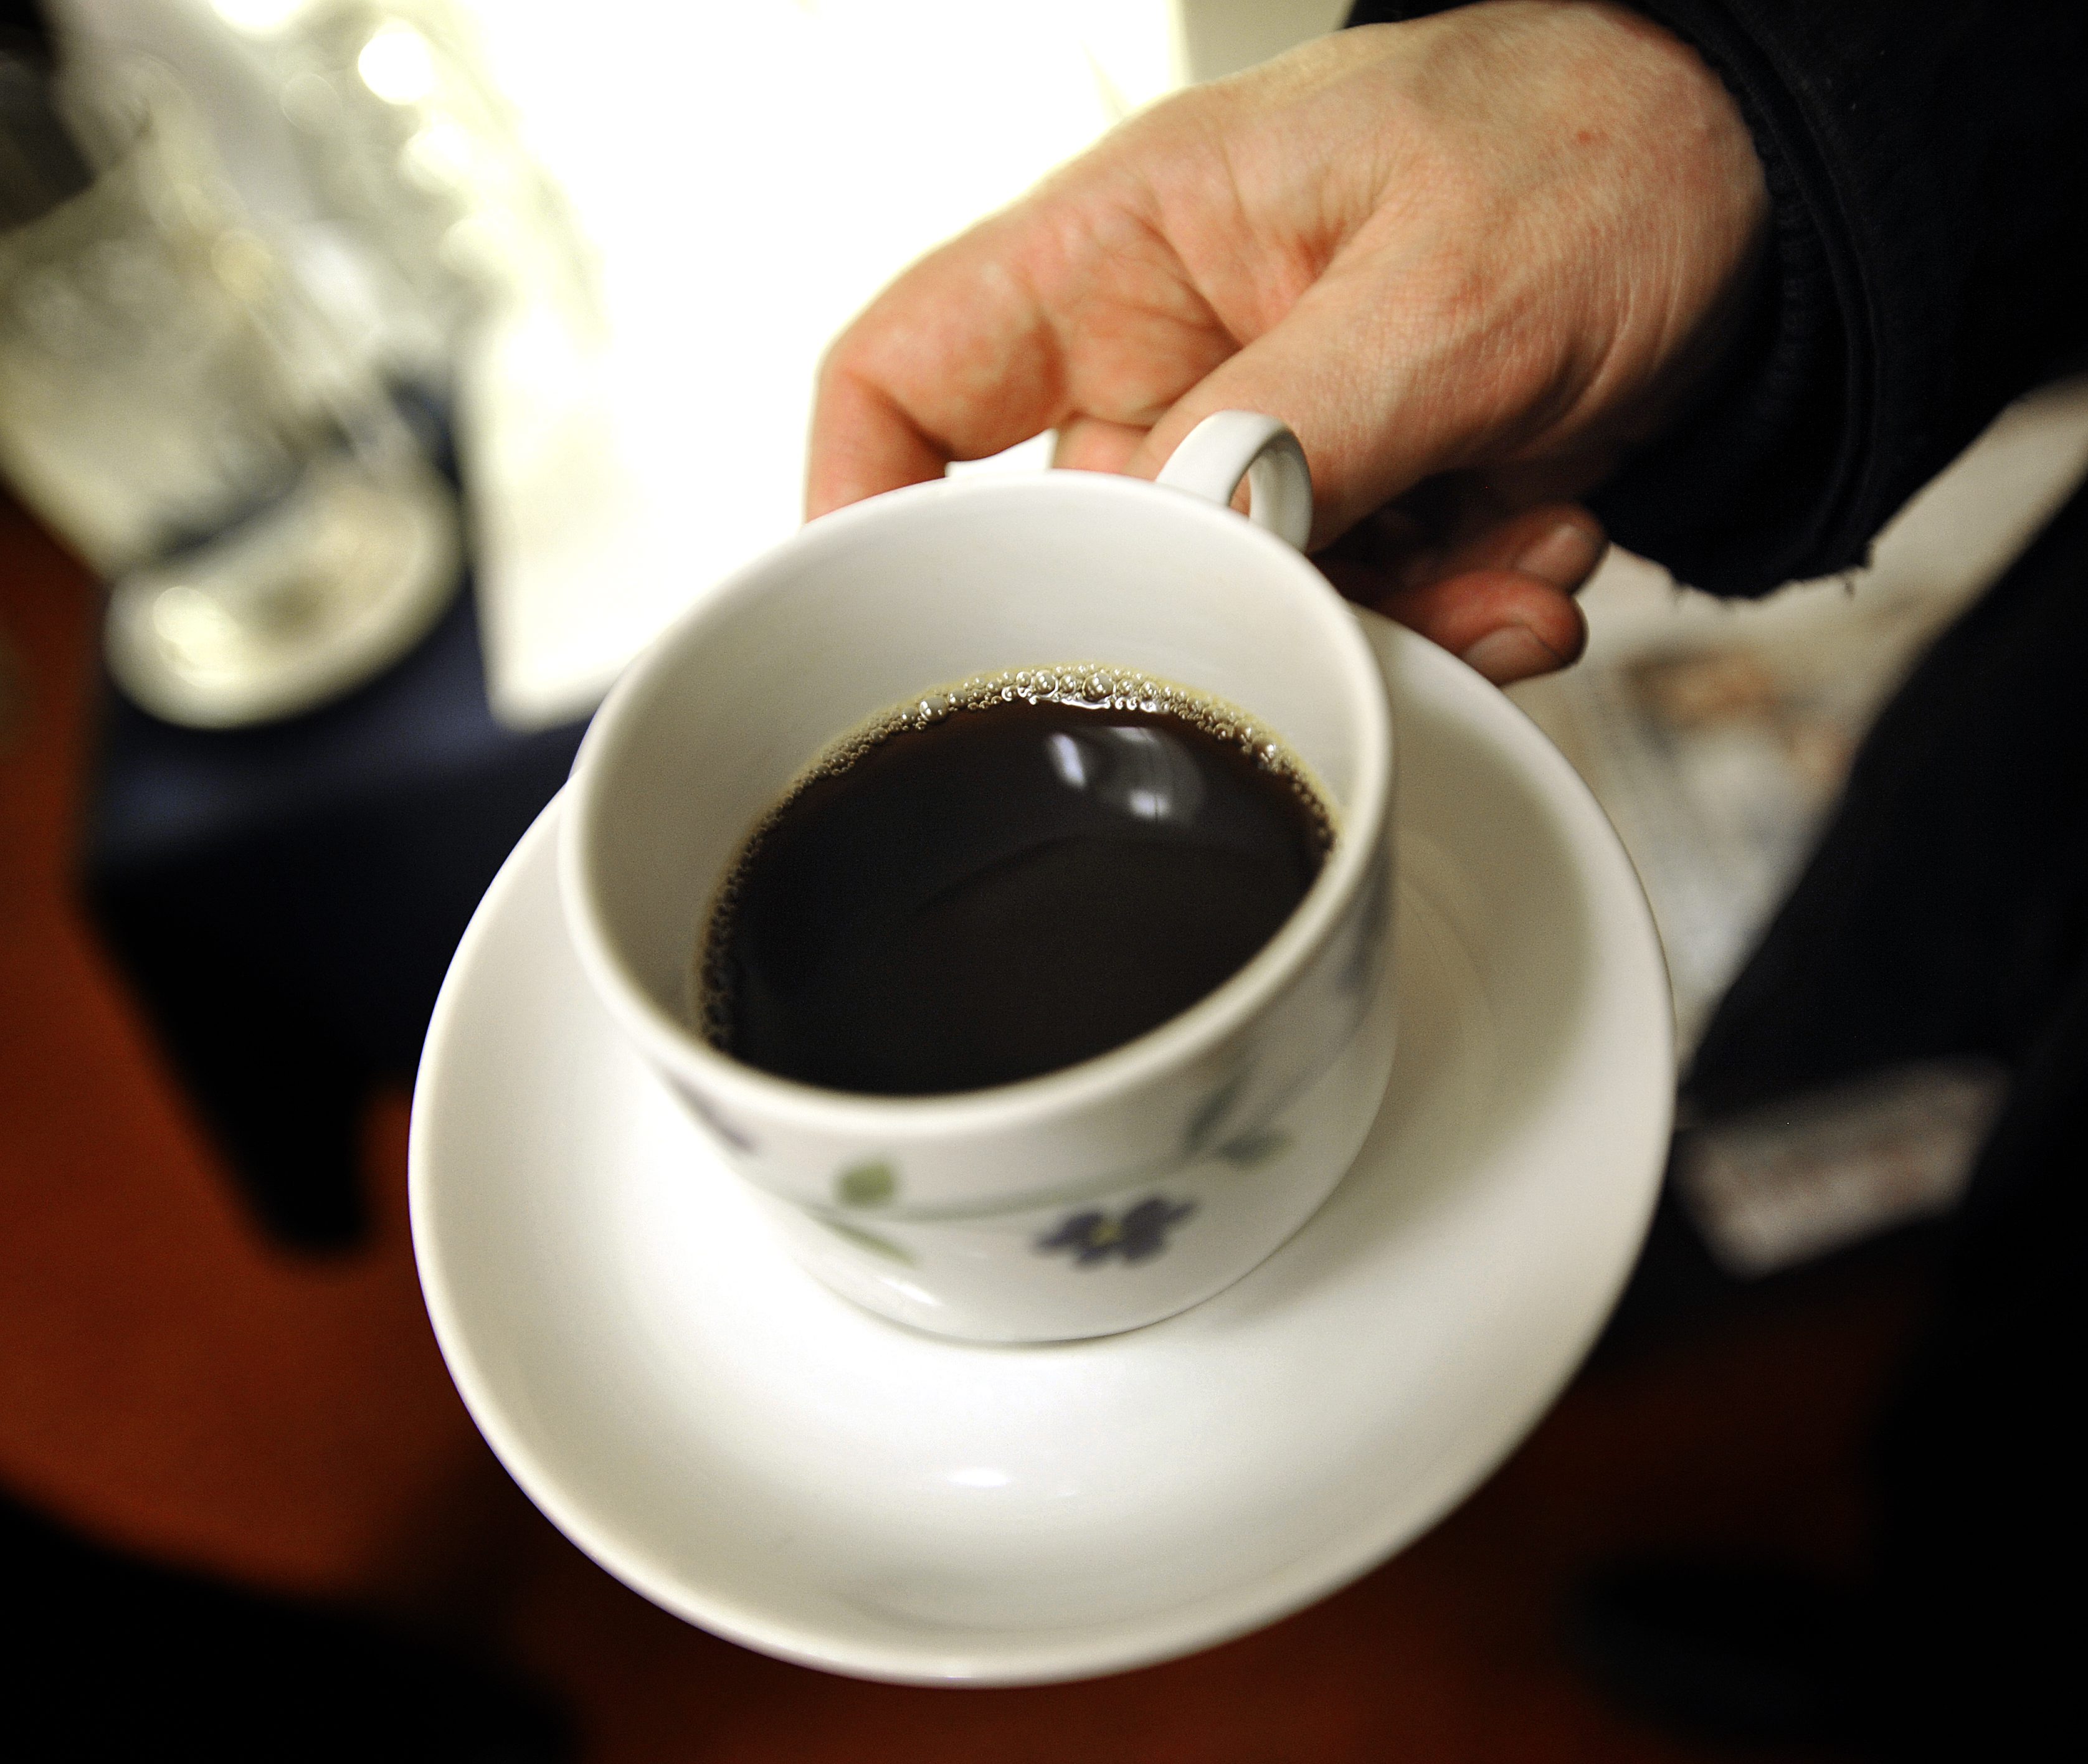 På Lundagrupperna kan yngre demenssjuka träffas och snacka om sina problem över en kaffe.